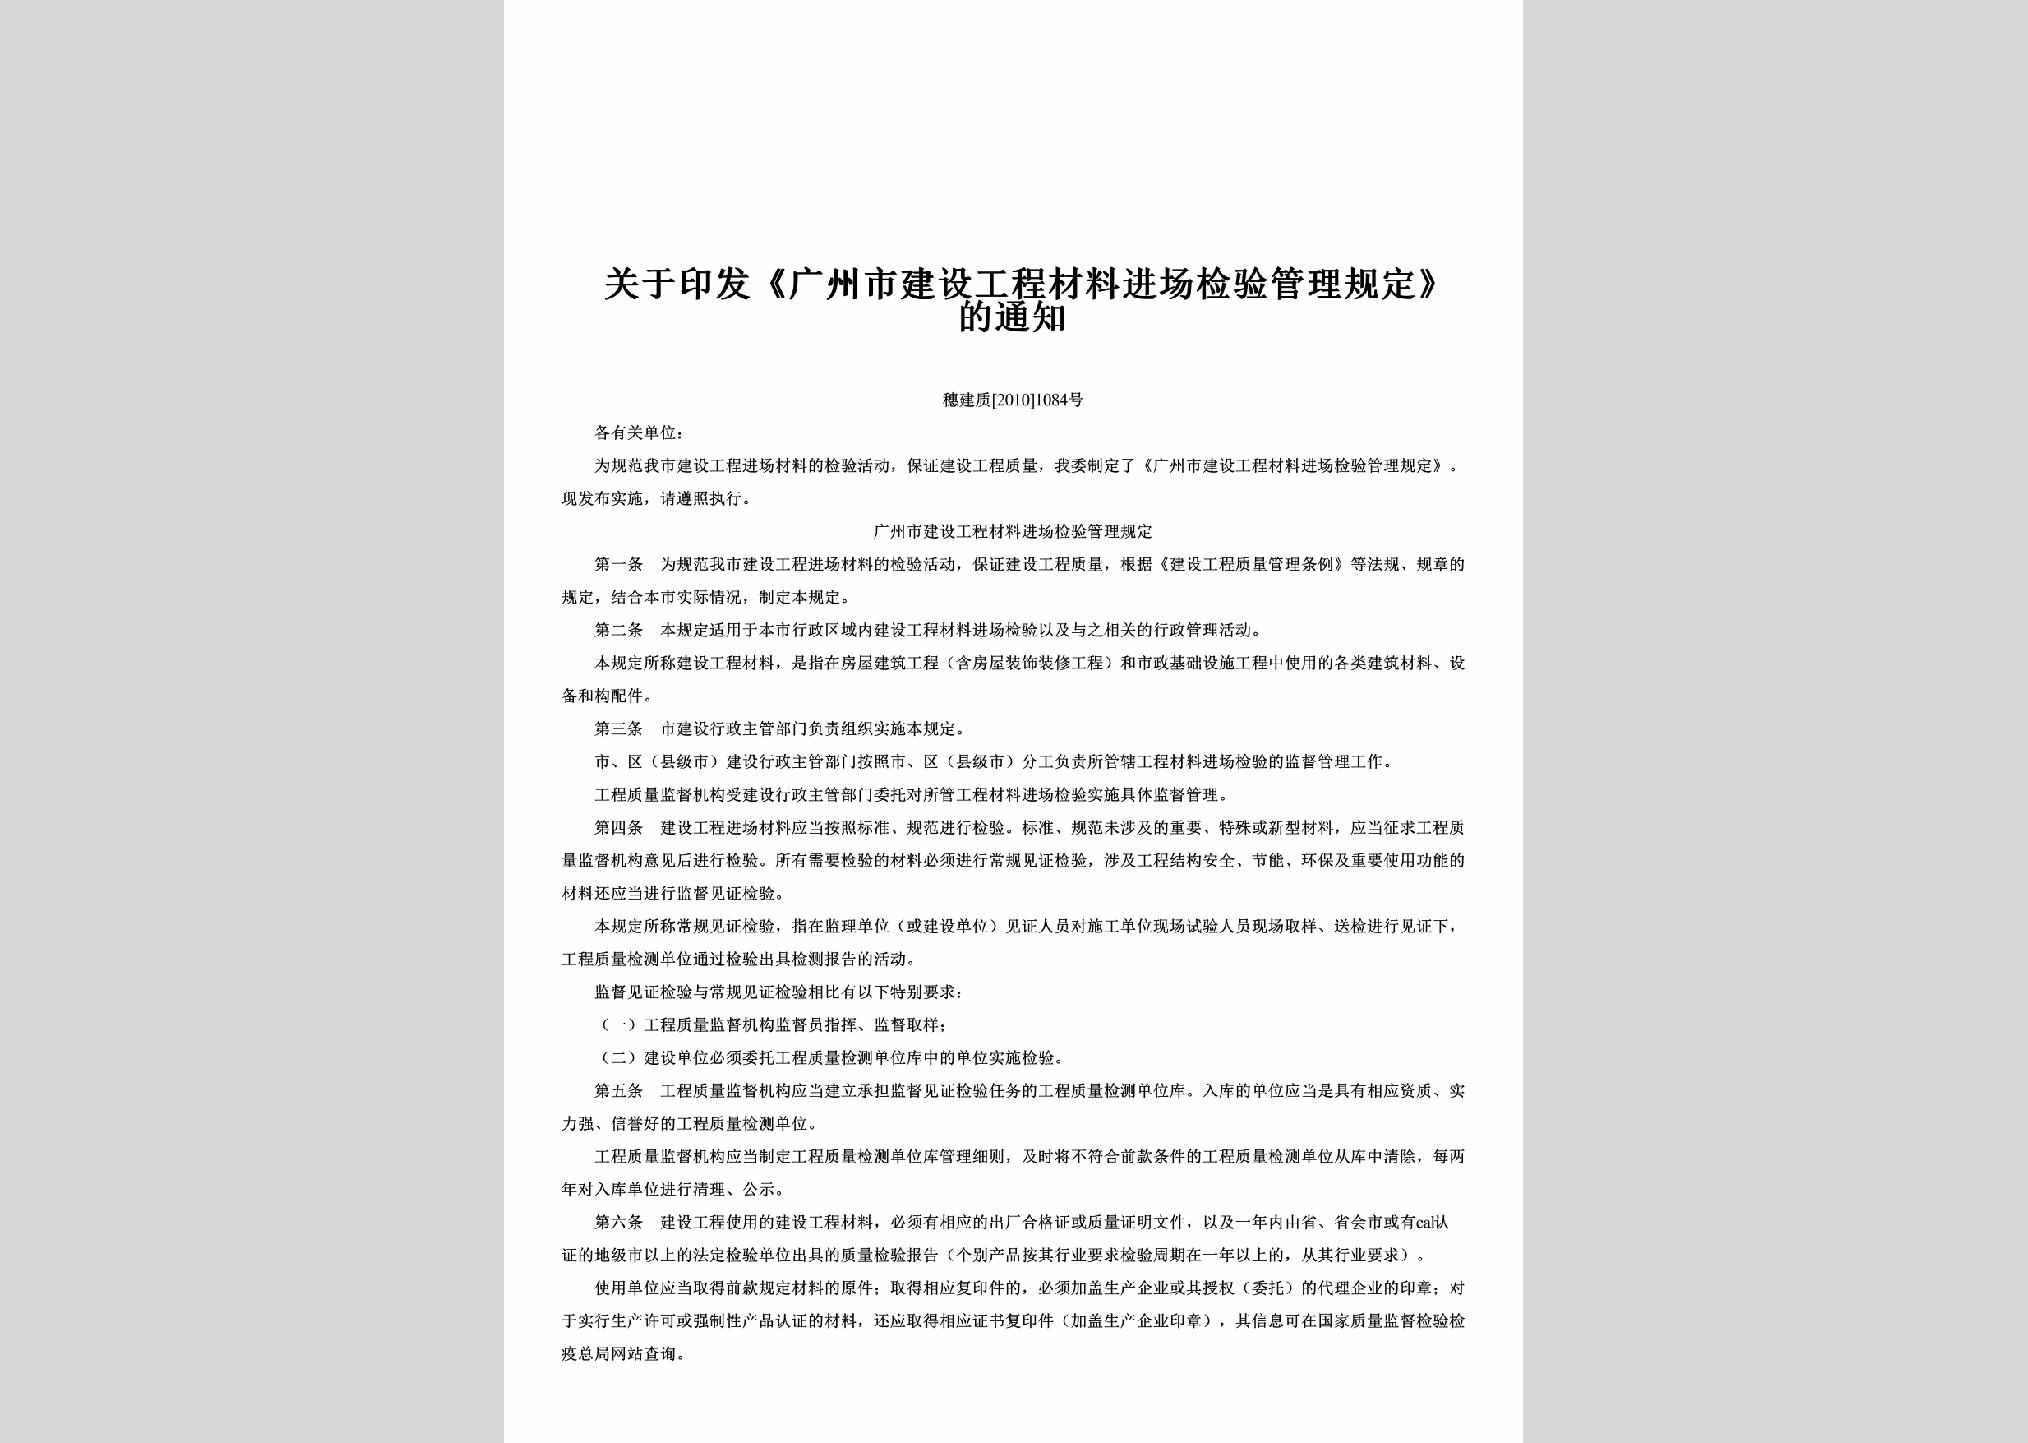 穗建质[2010]1084号：关于印发《广州市建设工程材料进场检验管理规定》的通知